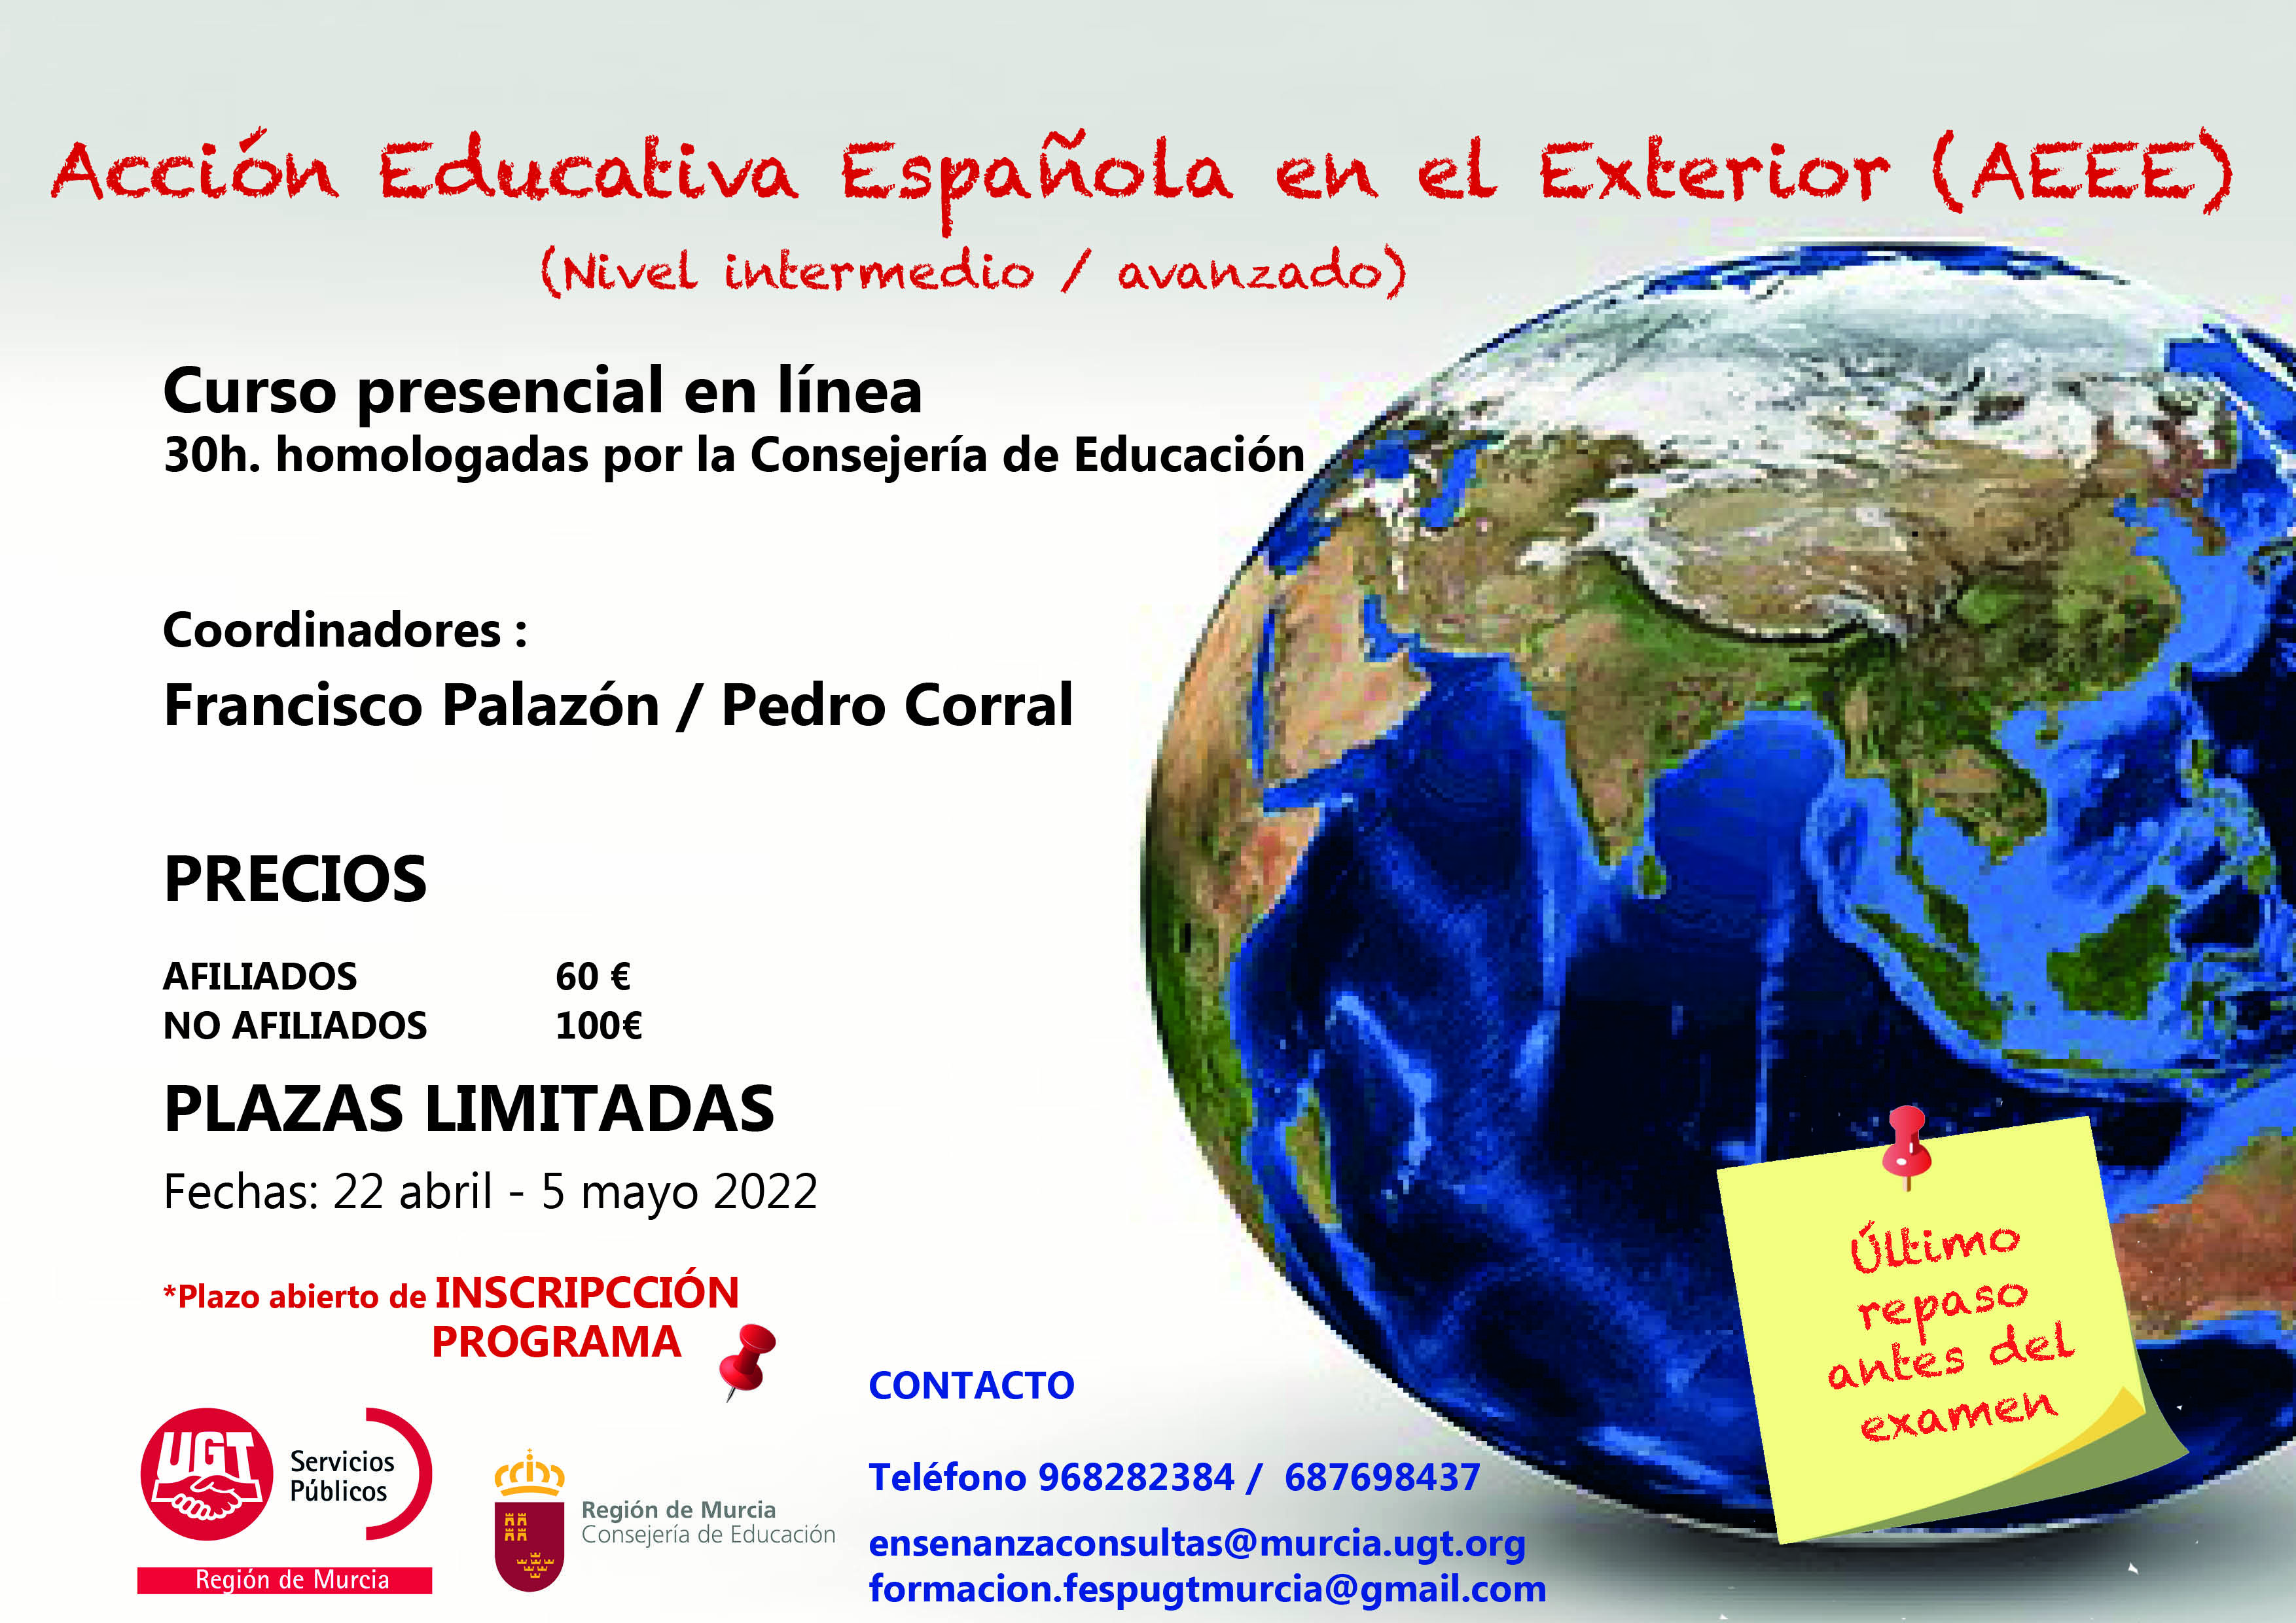 Curso Acción Educativa Española en el Exterior (AEEE) 30 horas homologadas